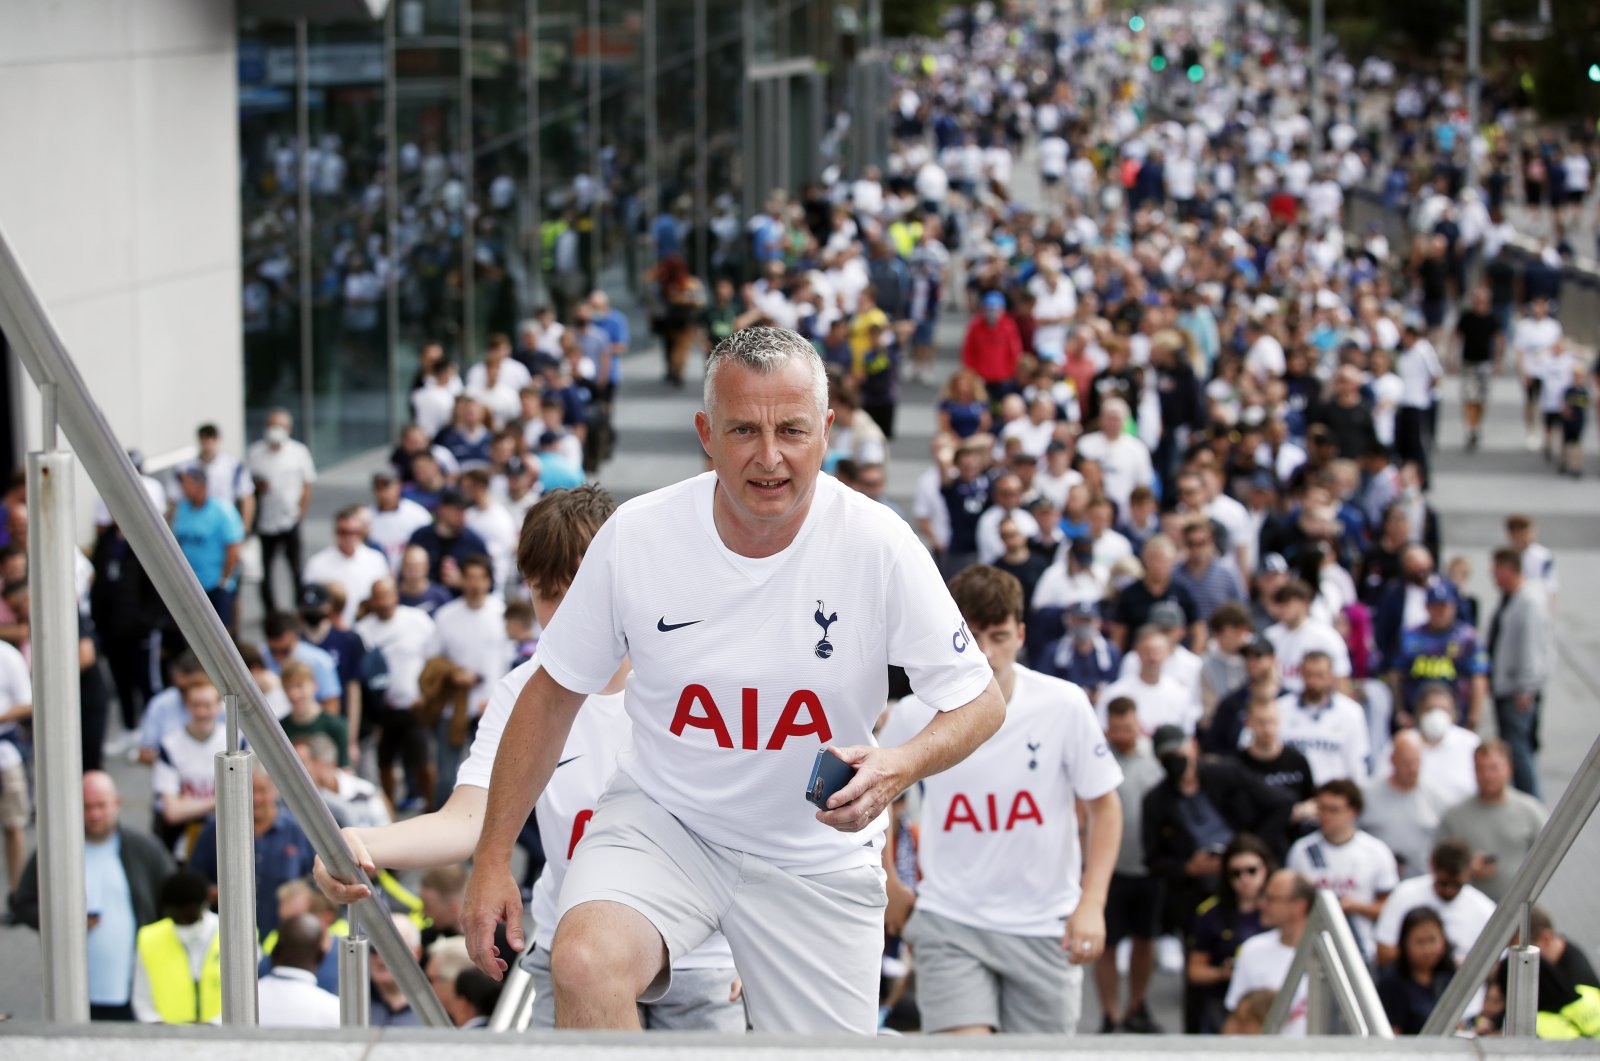 Tottenham Hotspur fans arrive ahead of the match against Manchester City, London, U.K., Aug. 15, 2021.  (Reuters Photo)